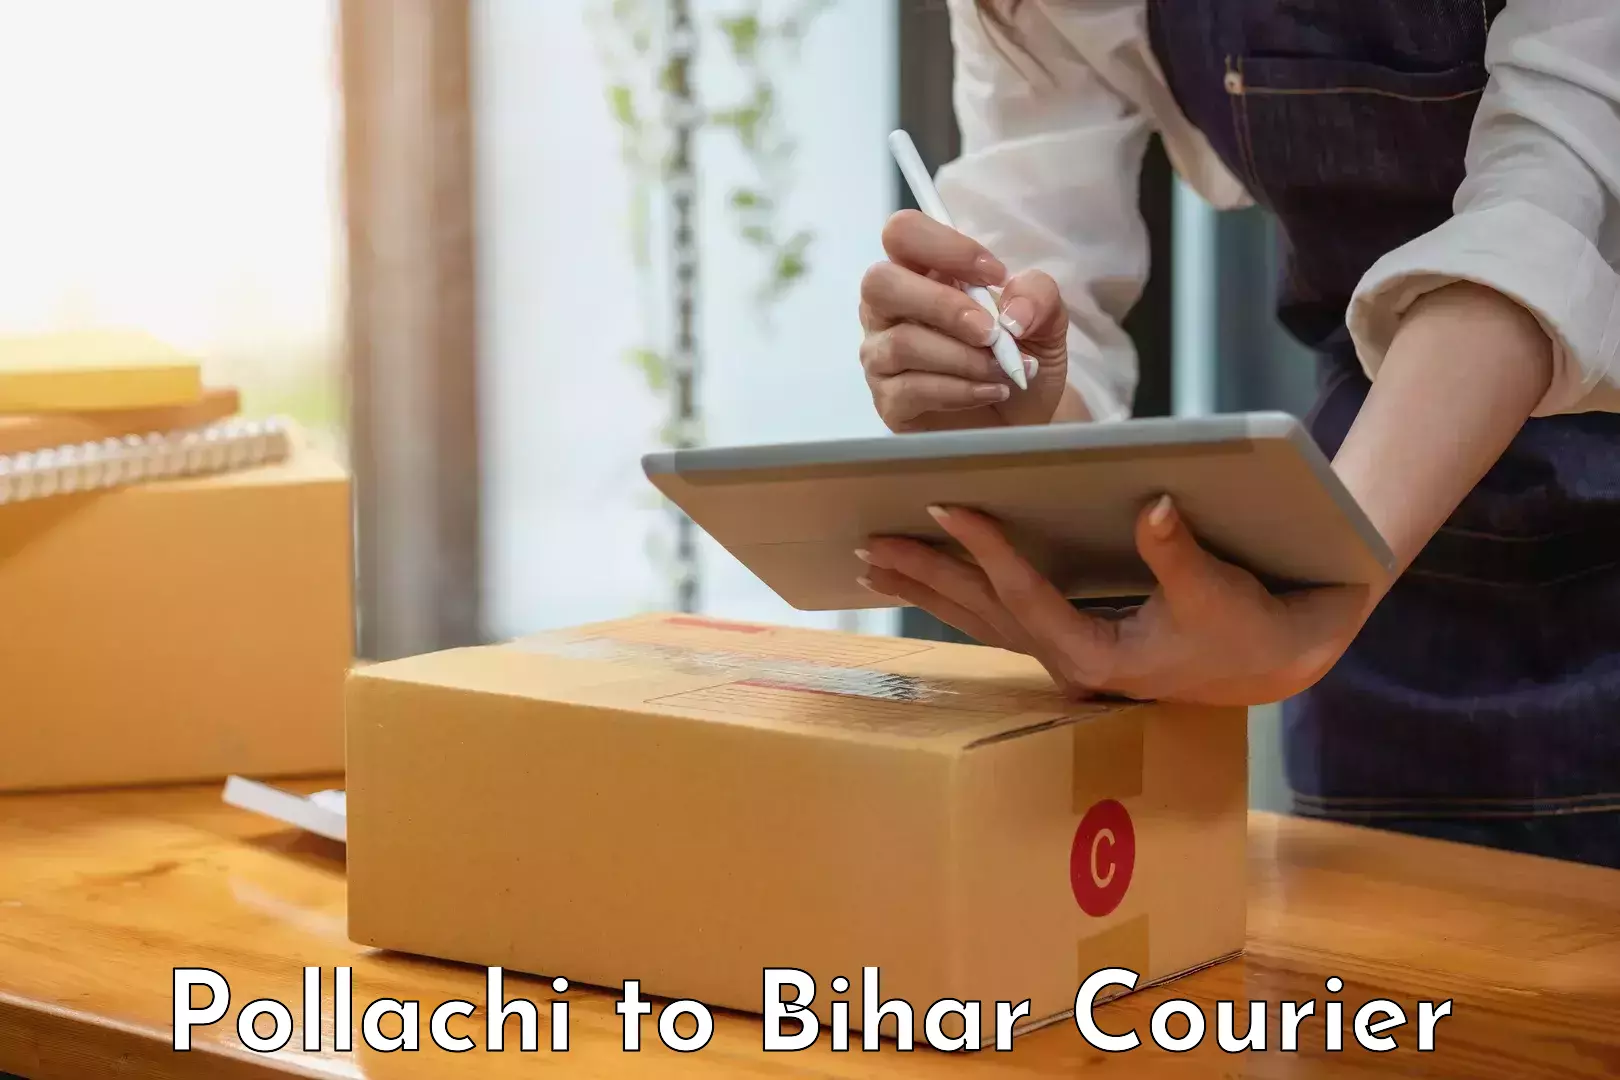 Premium courier services Pollachi to Dehri